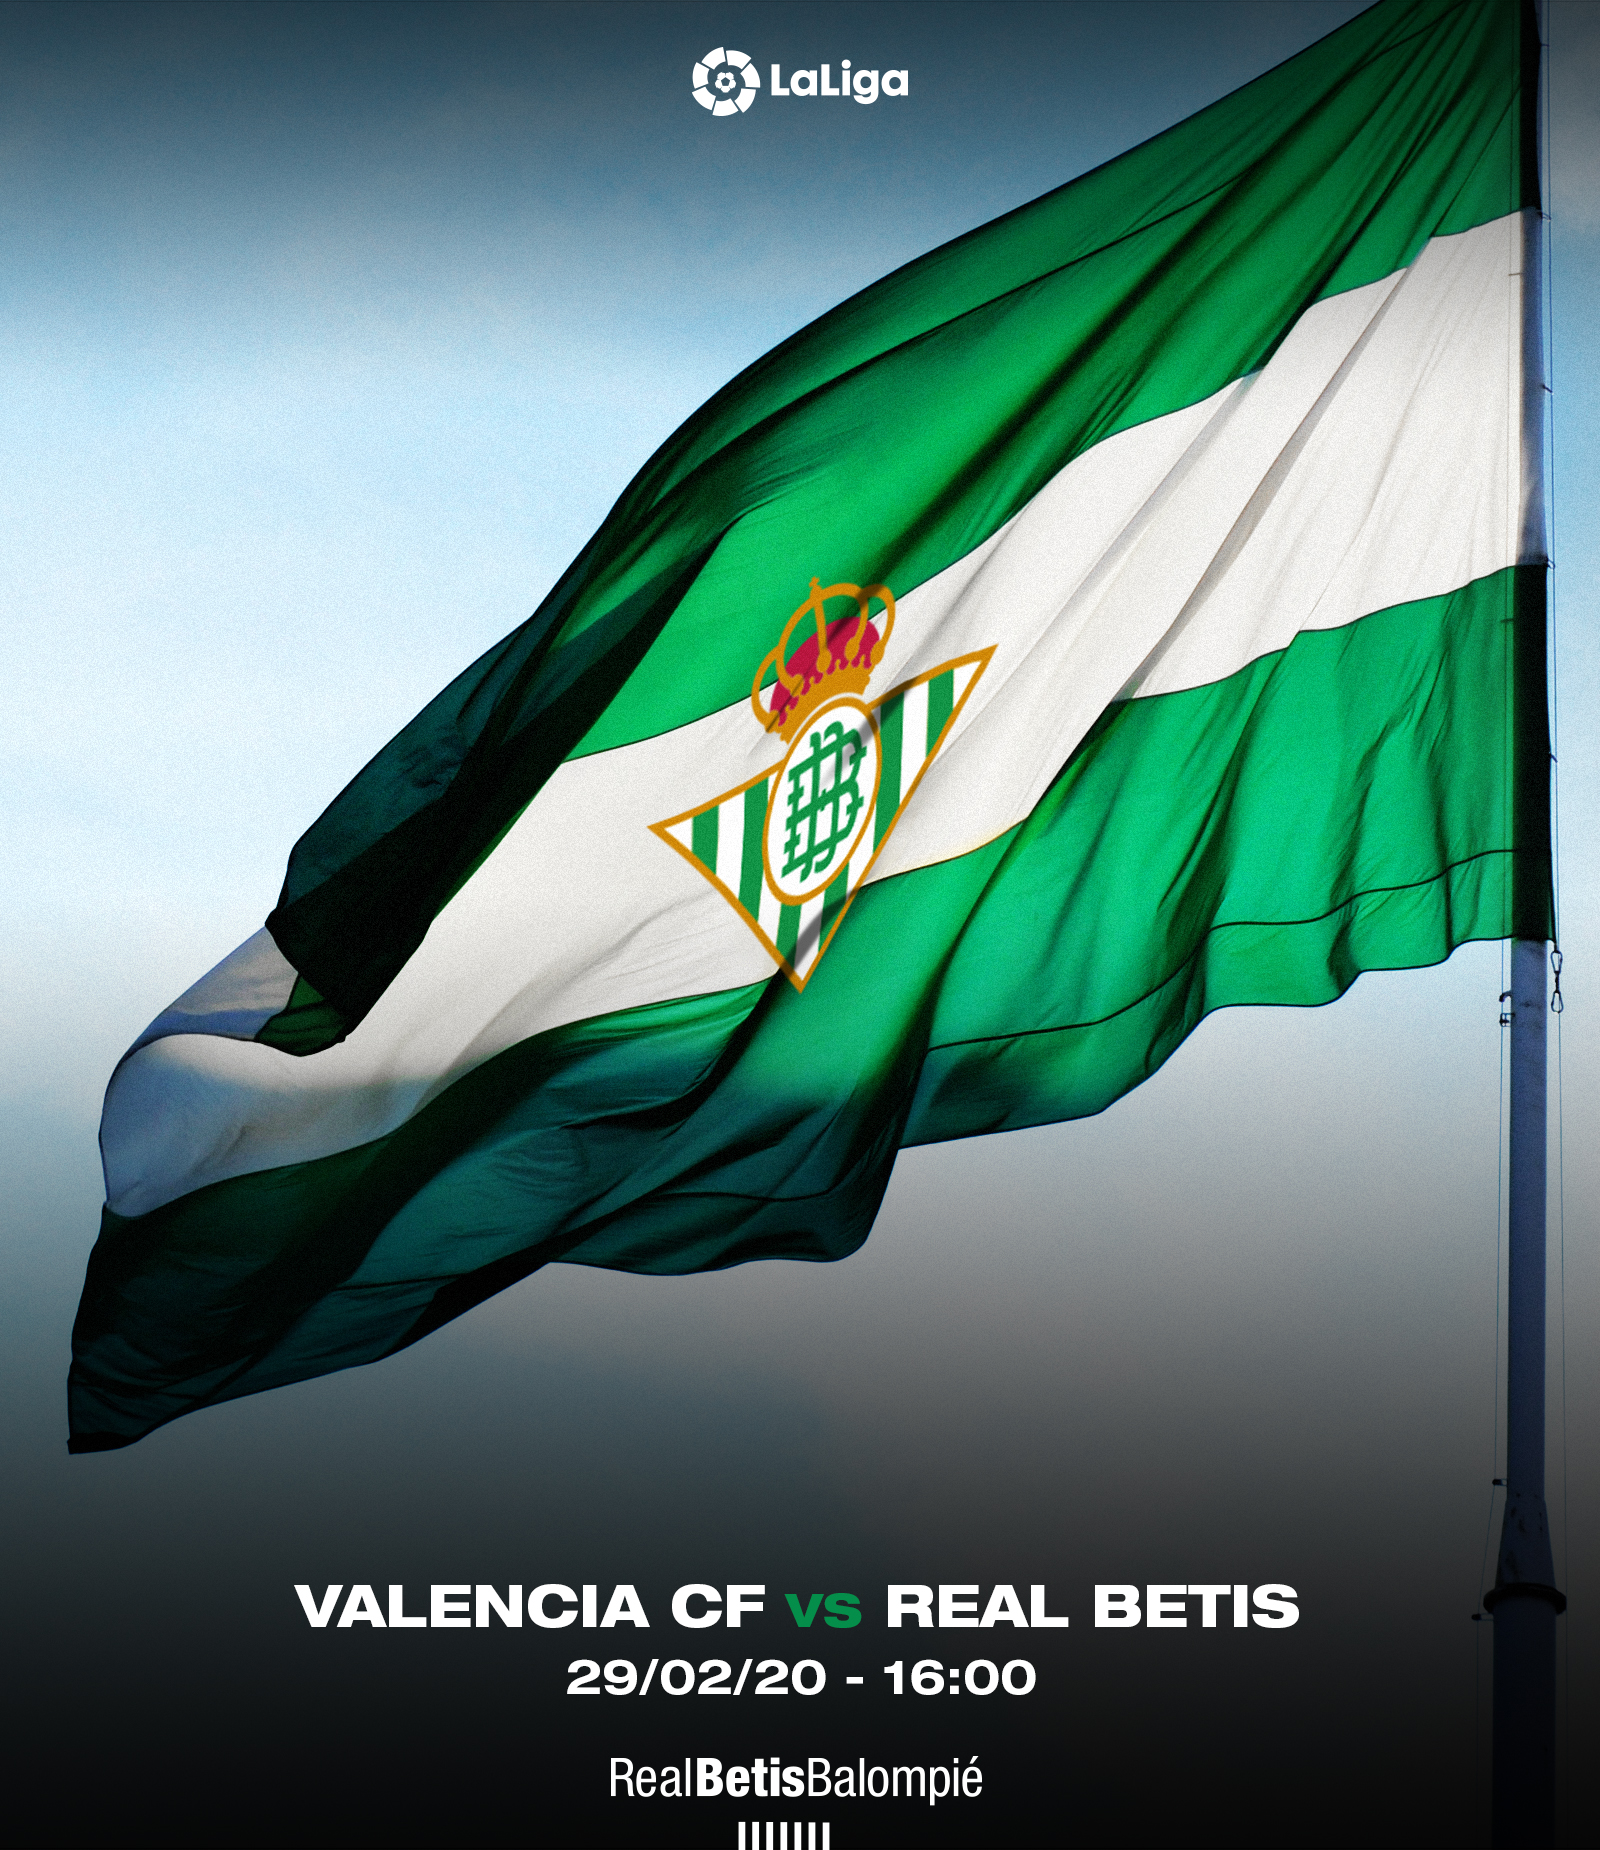 Bandera Real Betis » Confecciones Ordoñez